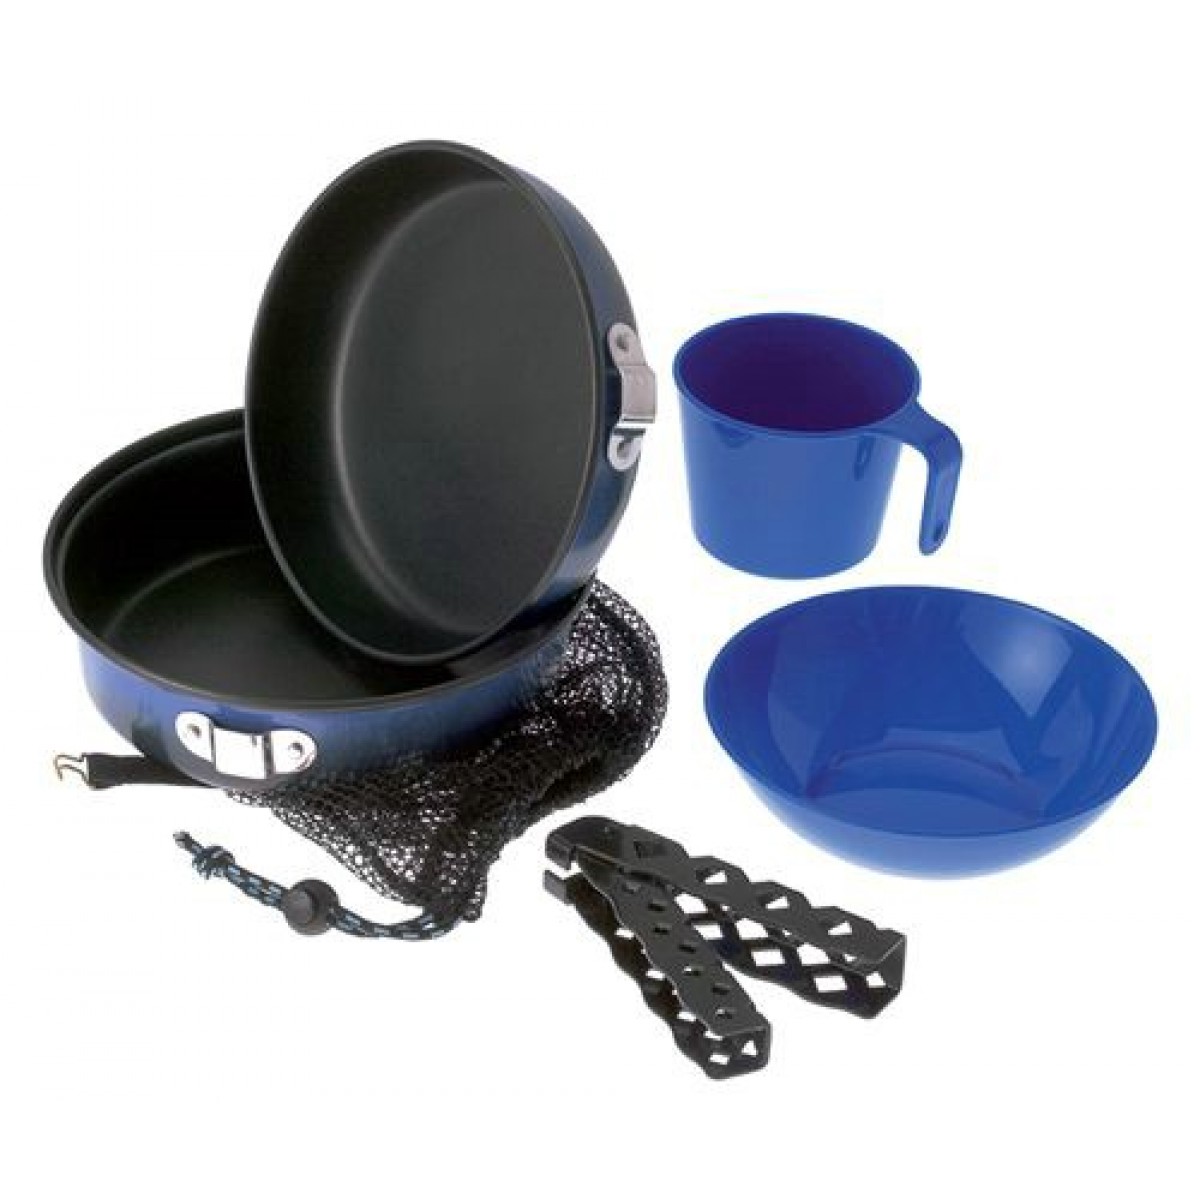 GSI - Набор посуды походный для одного человека Bugaboo Mess Kit